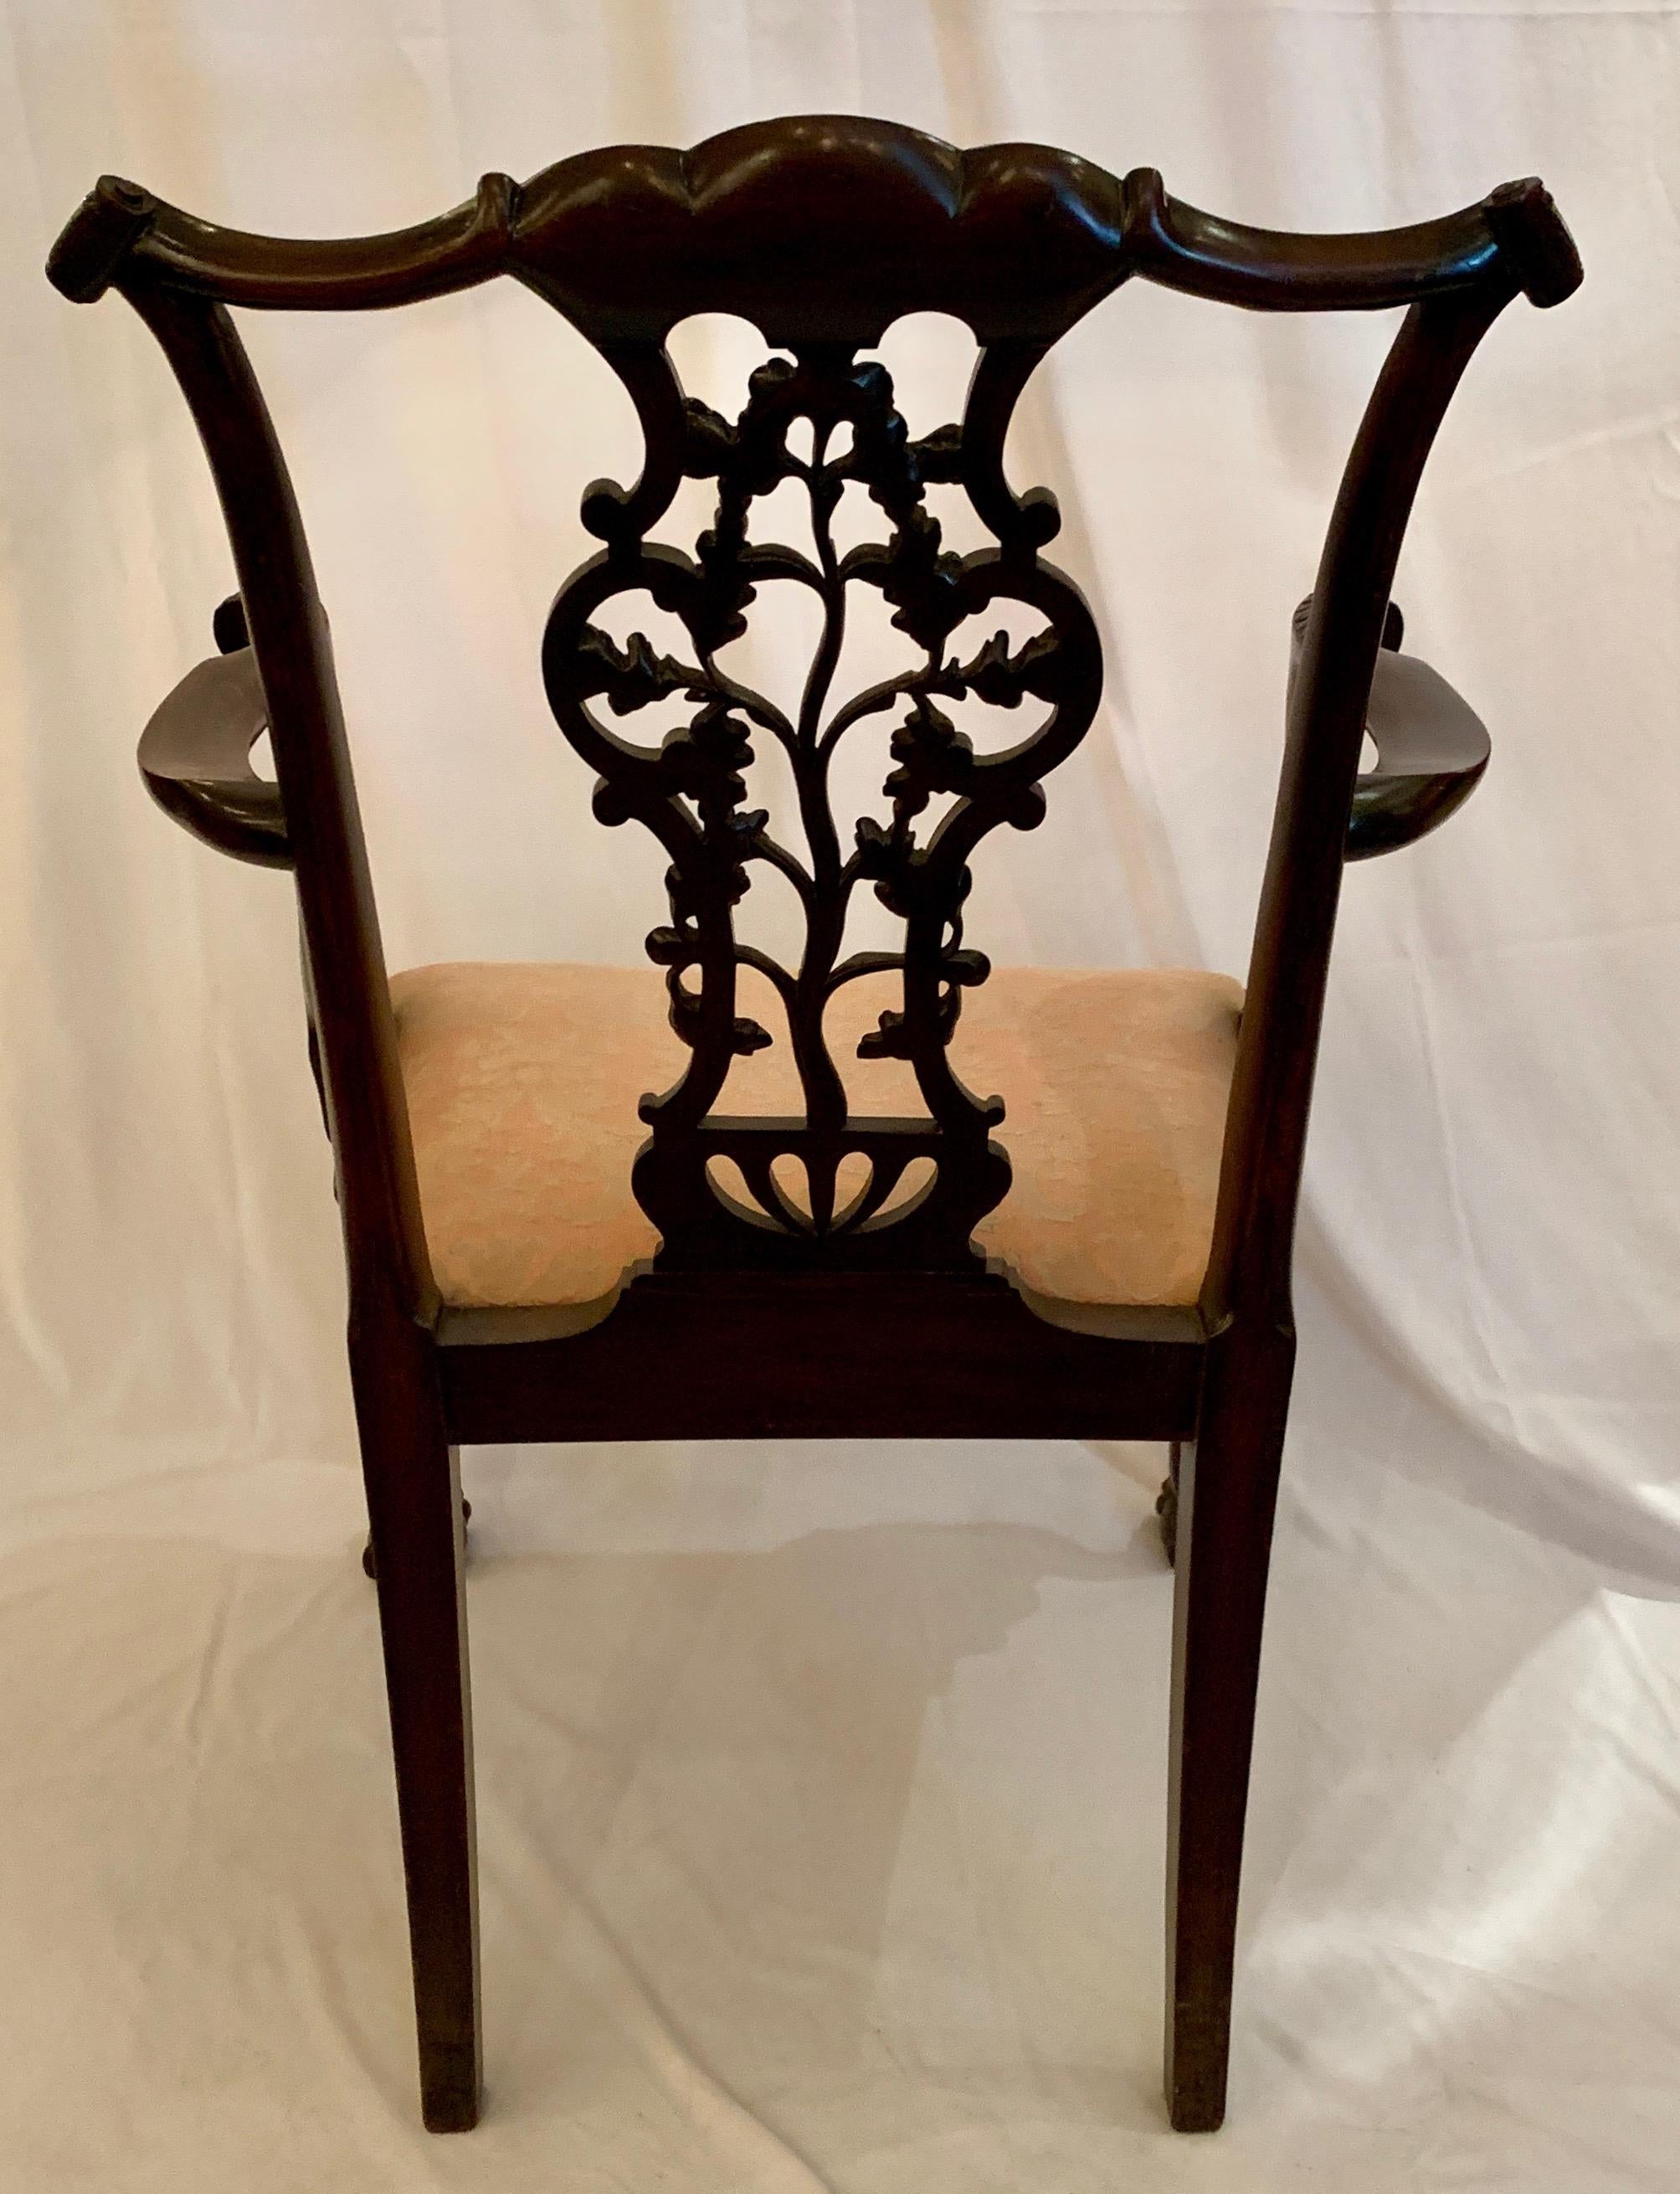 Dieser einzelne Sessel zeigt die Sorgfalt, mit der ein Handwerksmeister seine Schnitzereien ausgeführt hat.